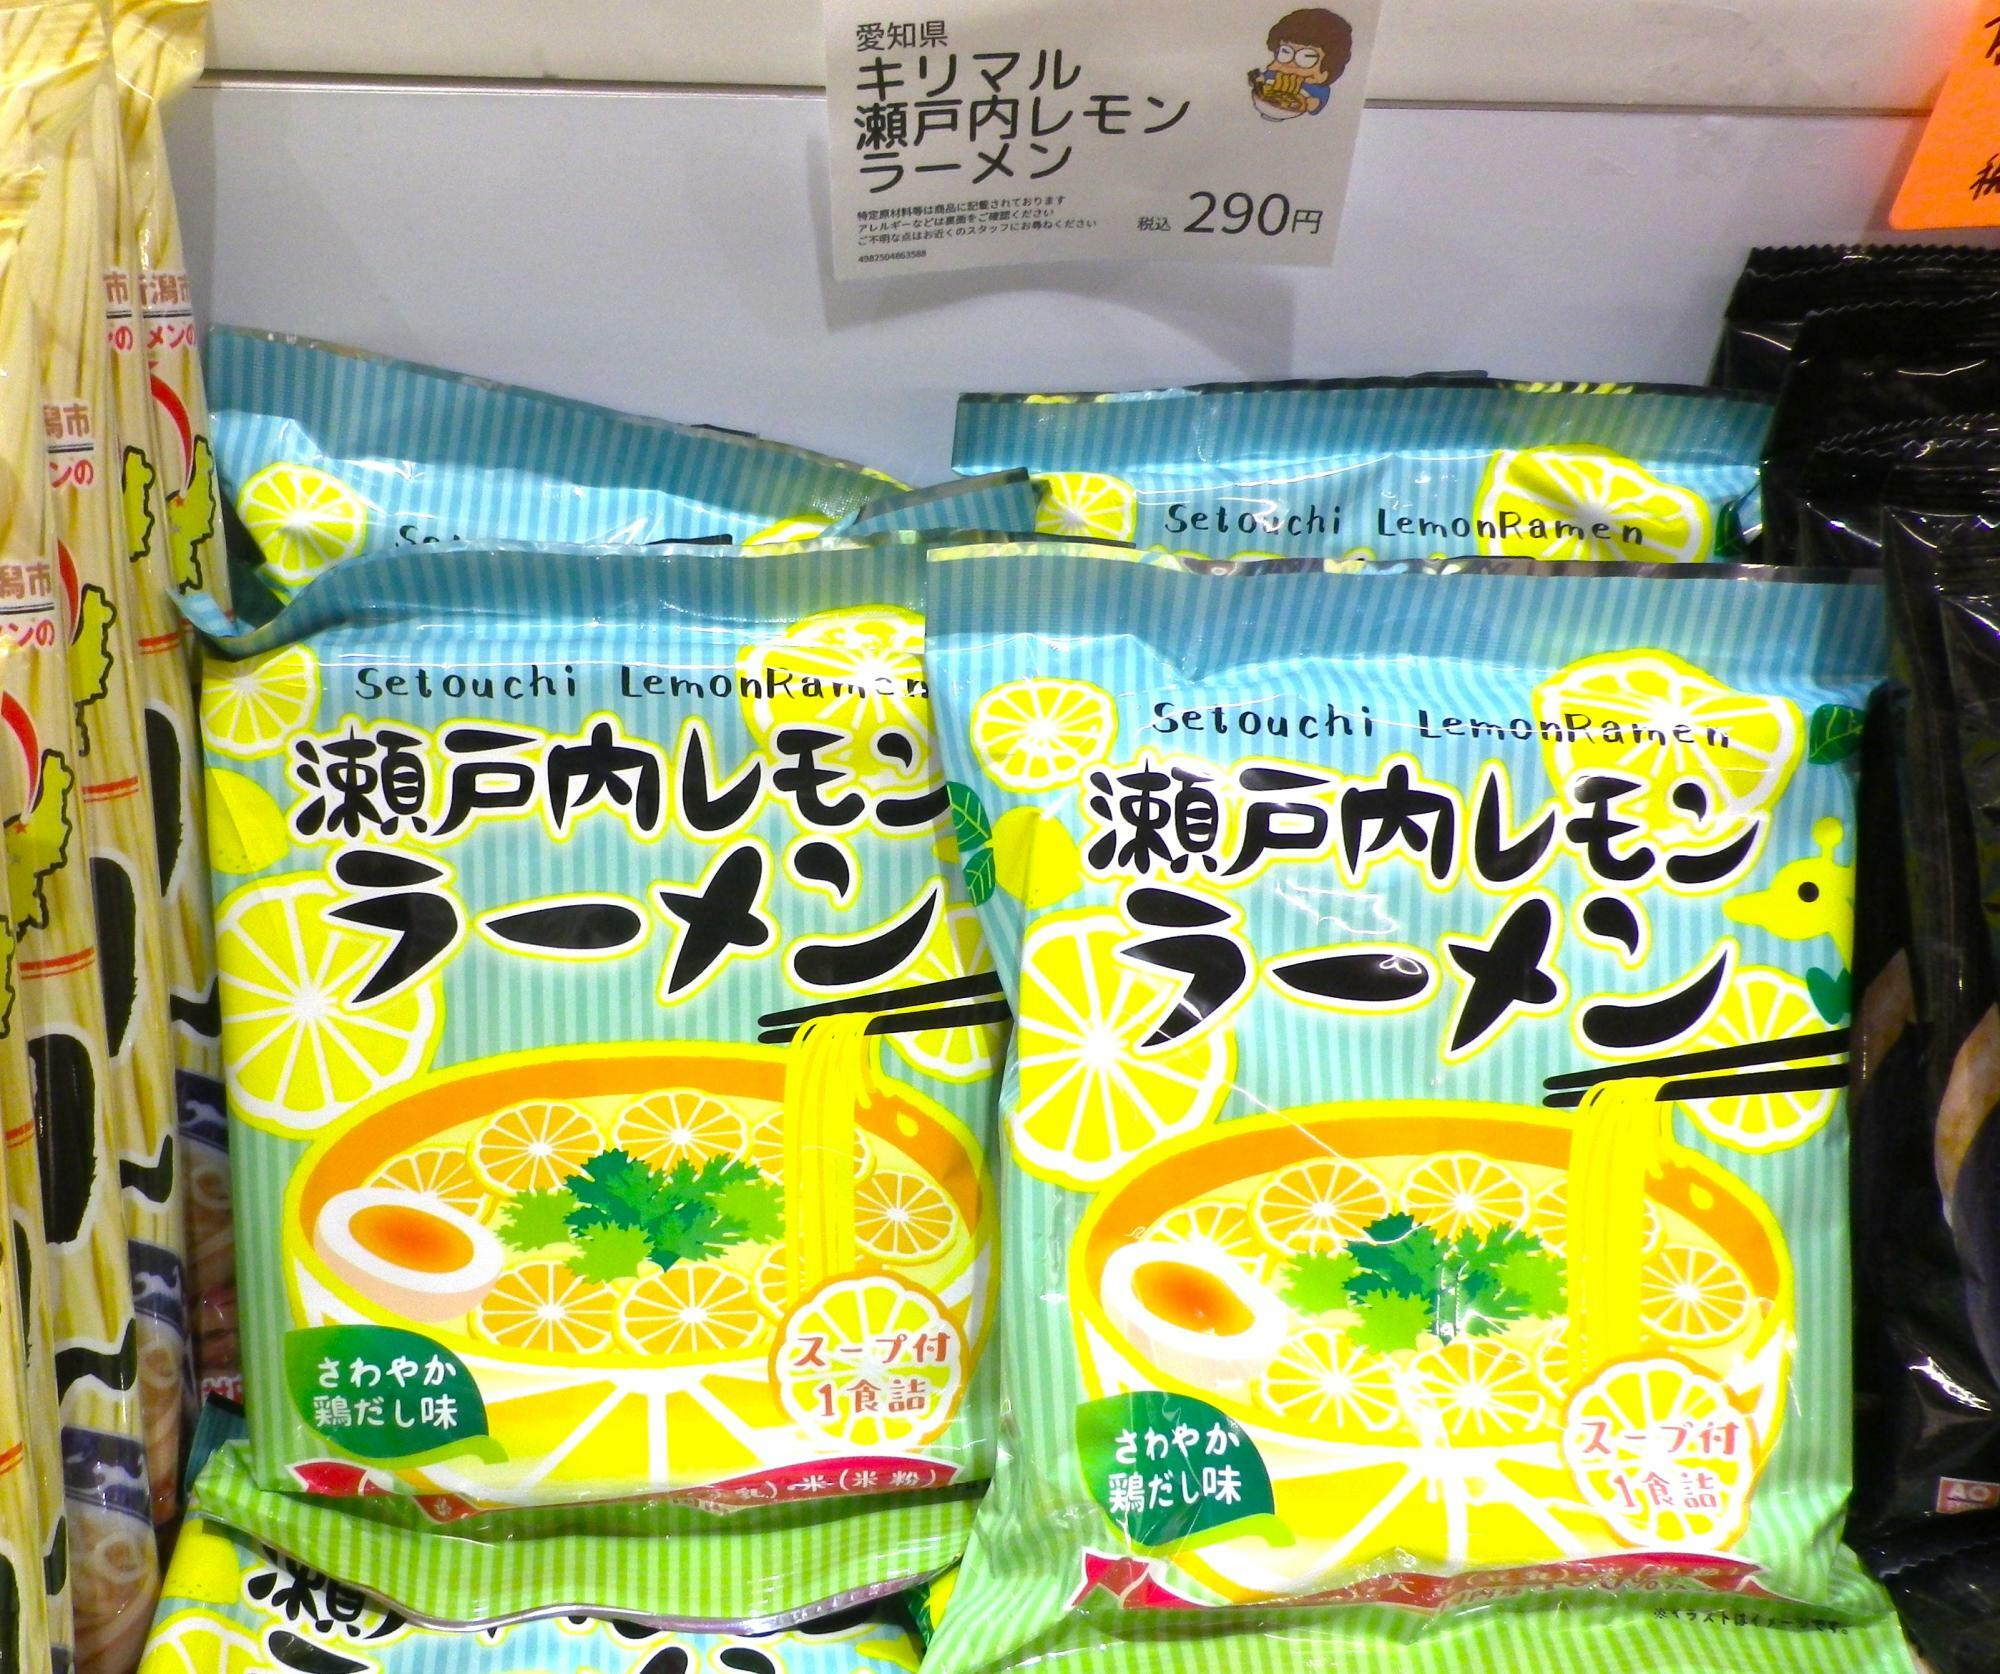 可愛いパッケージの「瀬戸内レモンラーメン」。